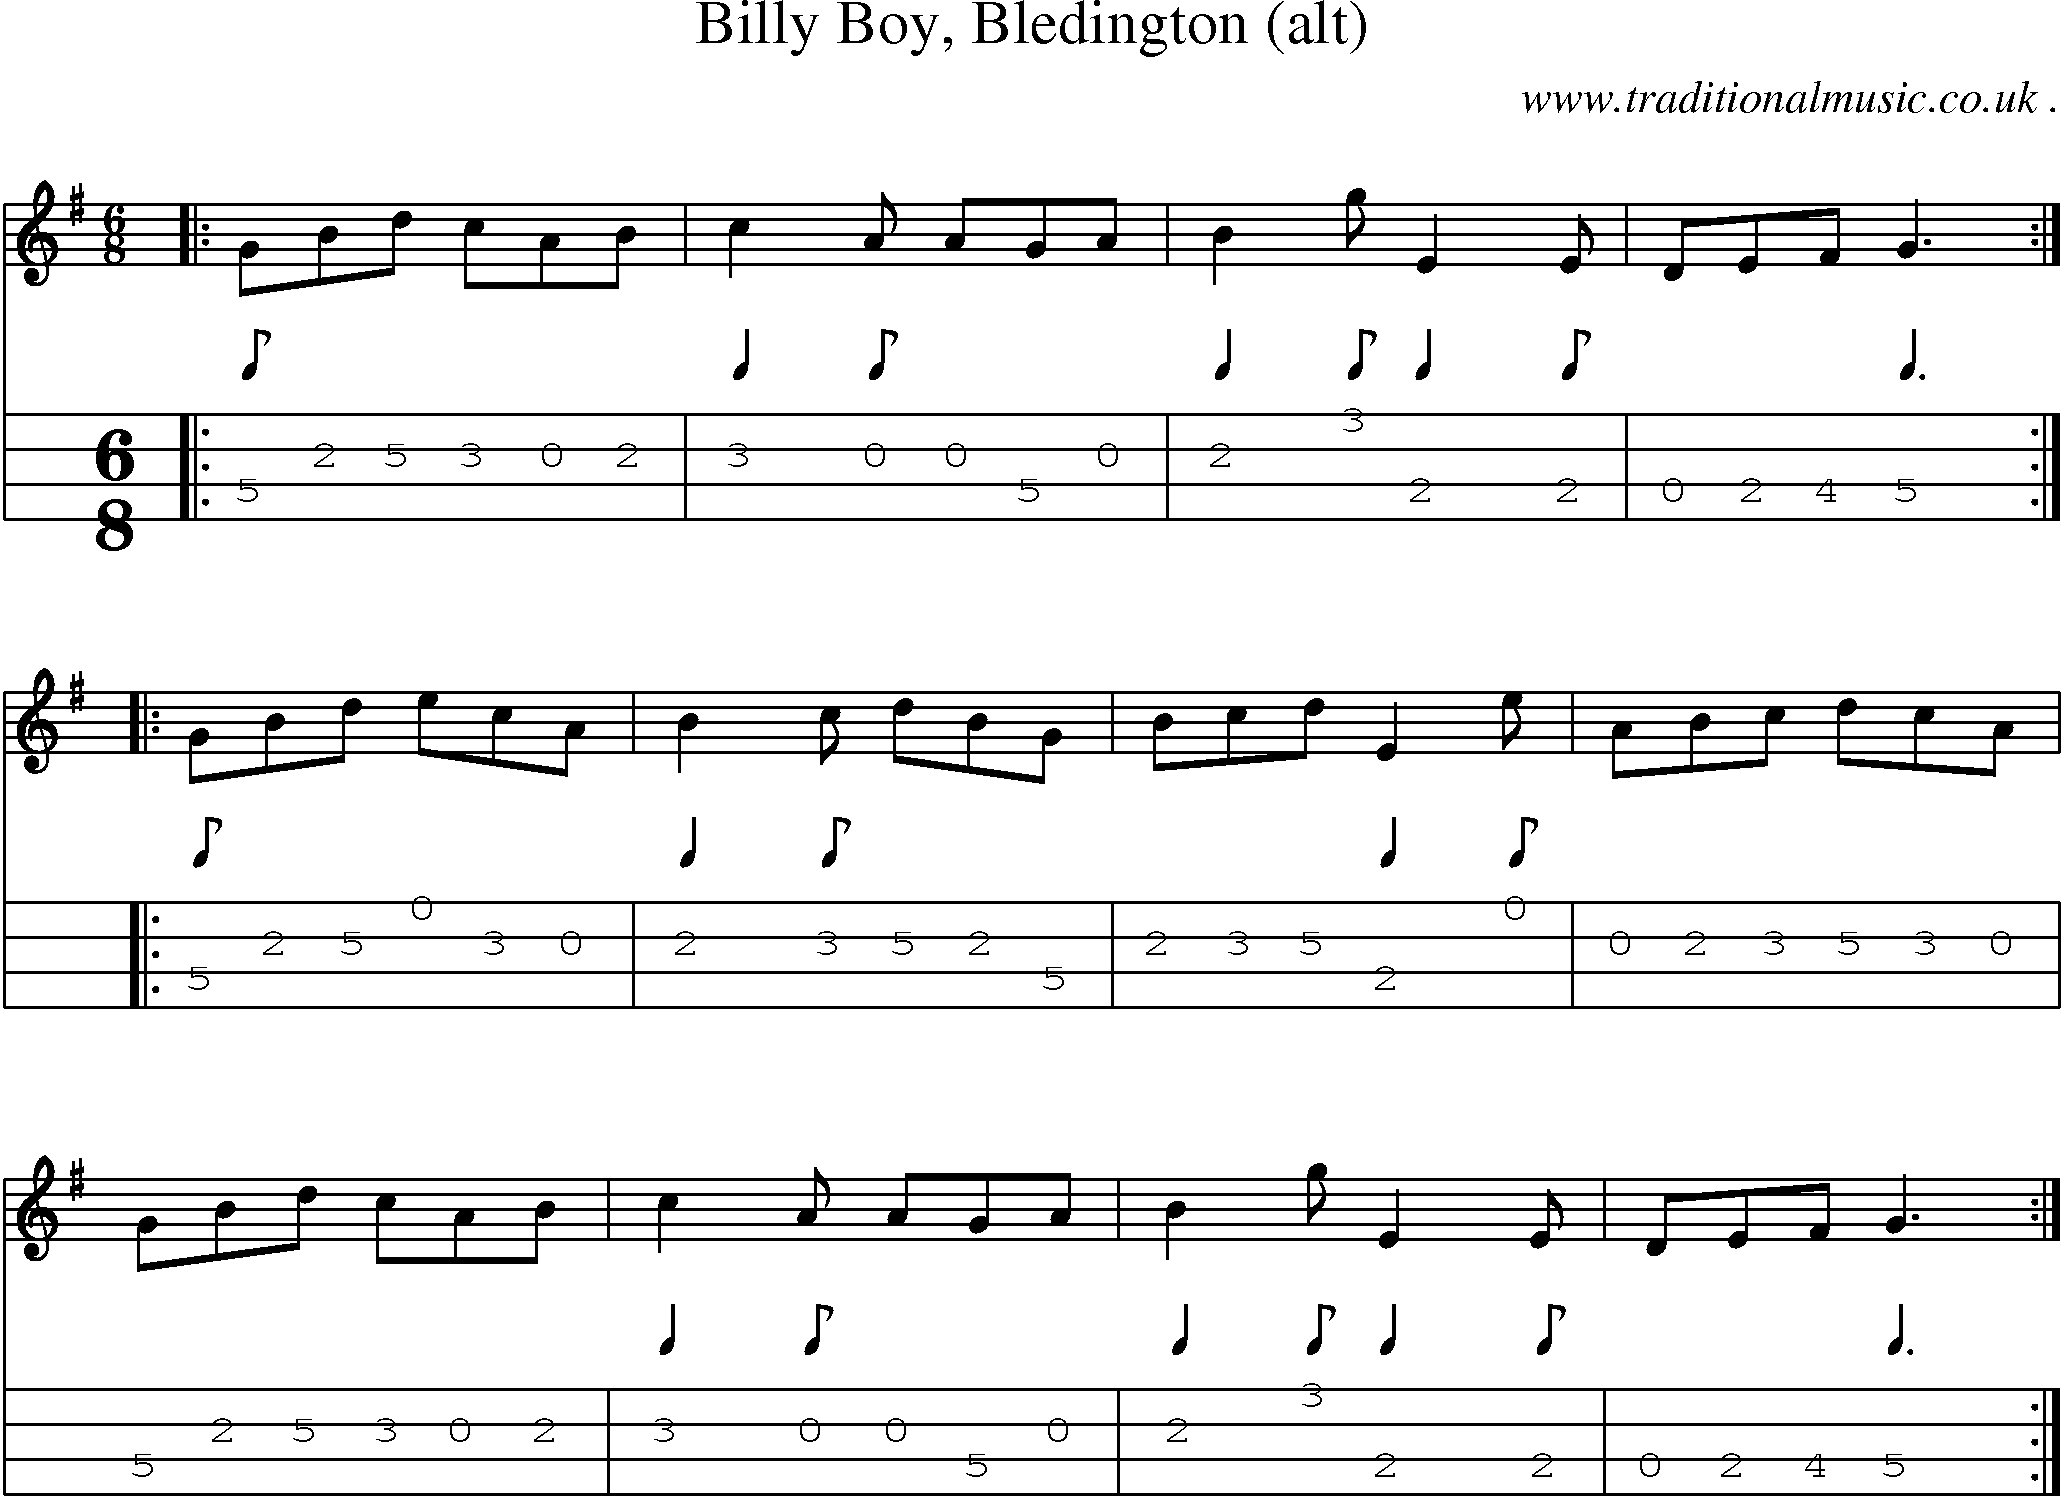 Sheet-Music and Mandolin Tabs for Billy Boy Bledington (alt)